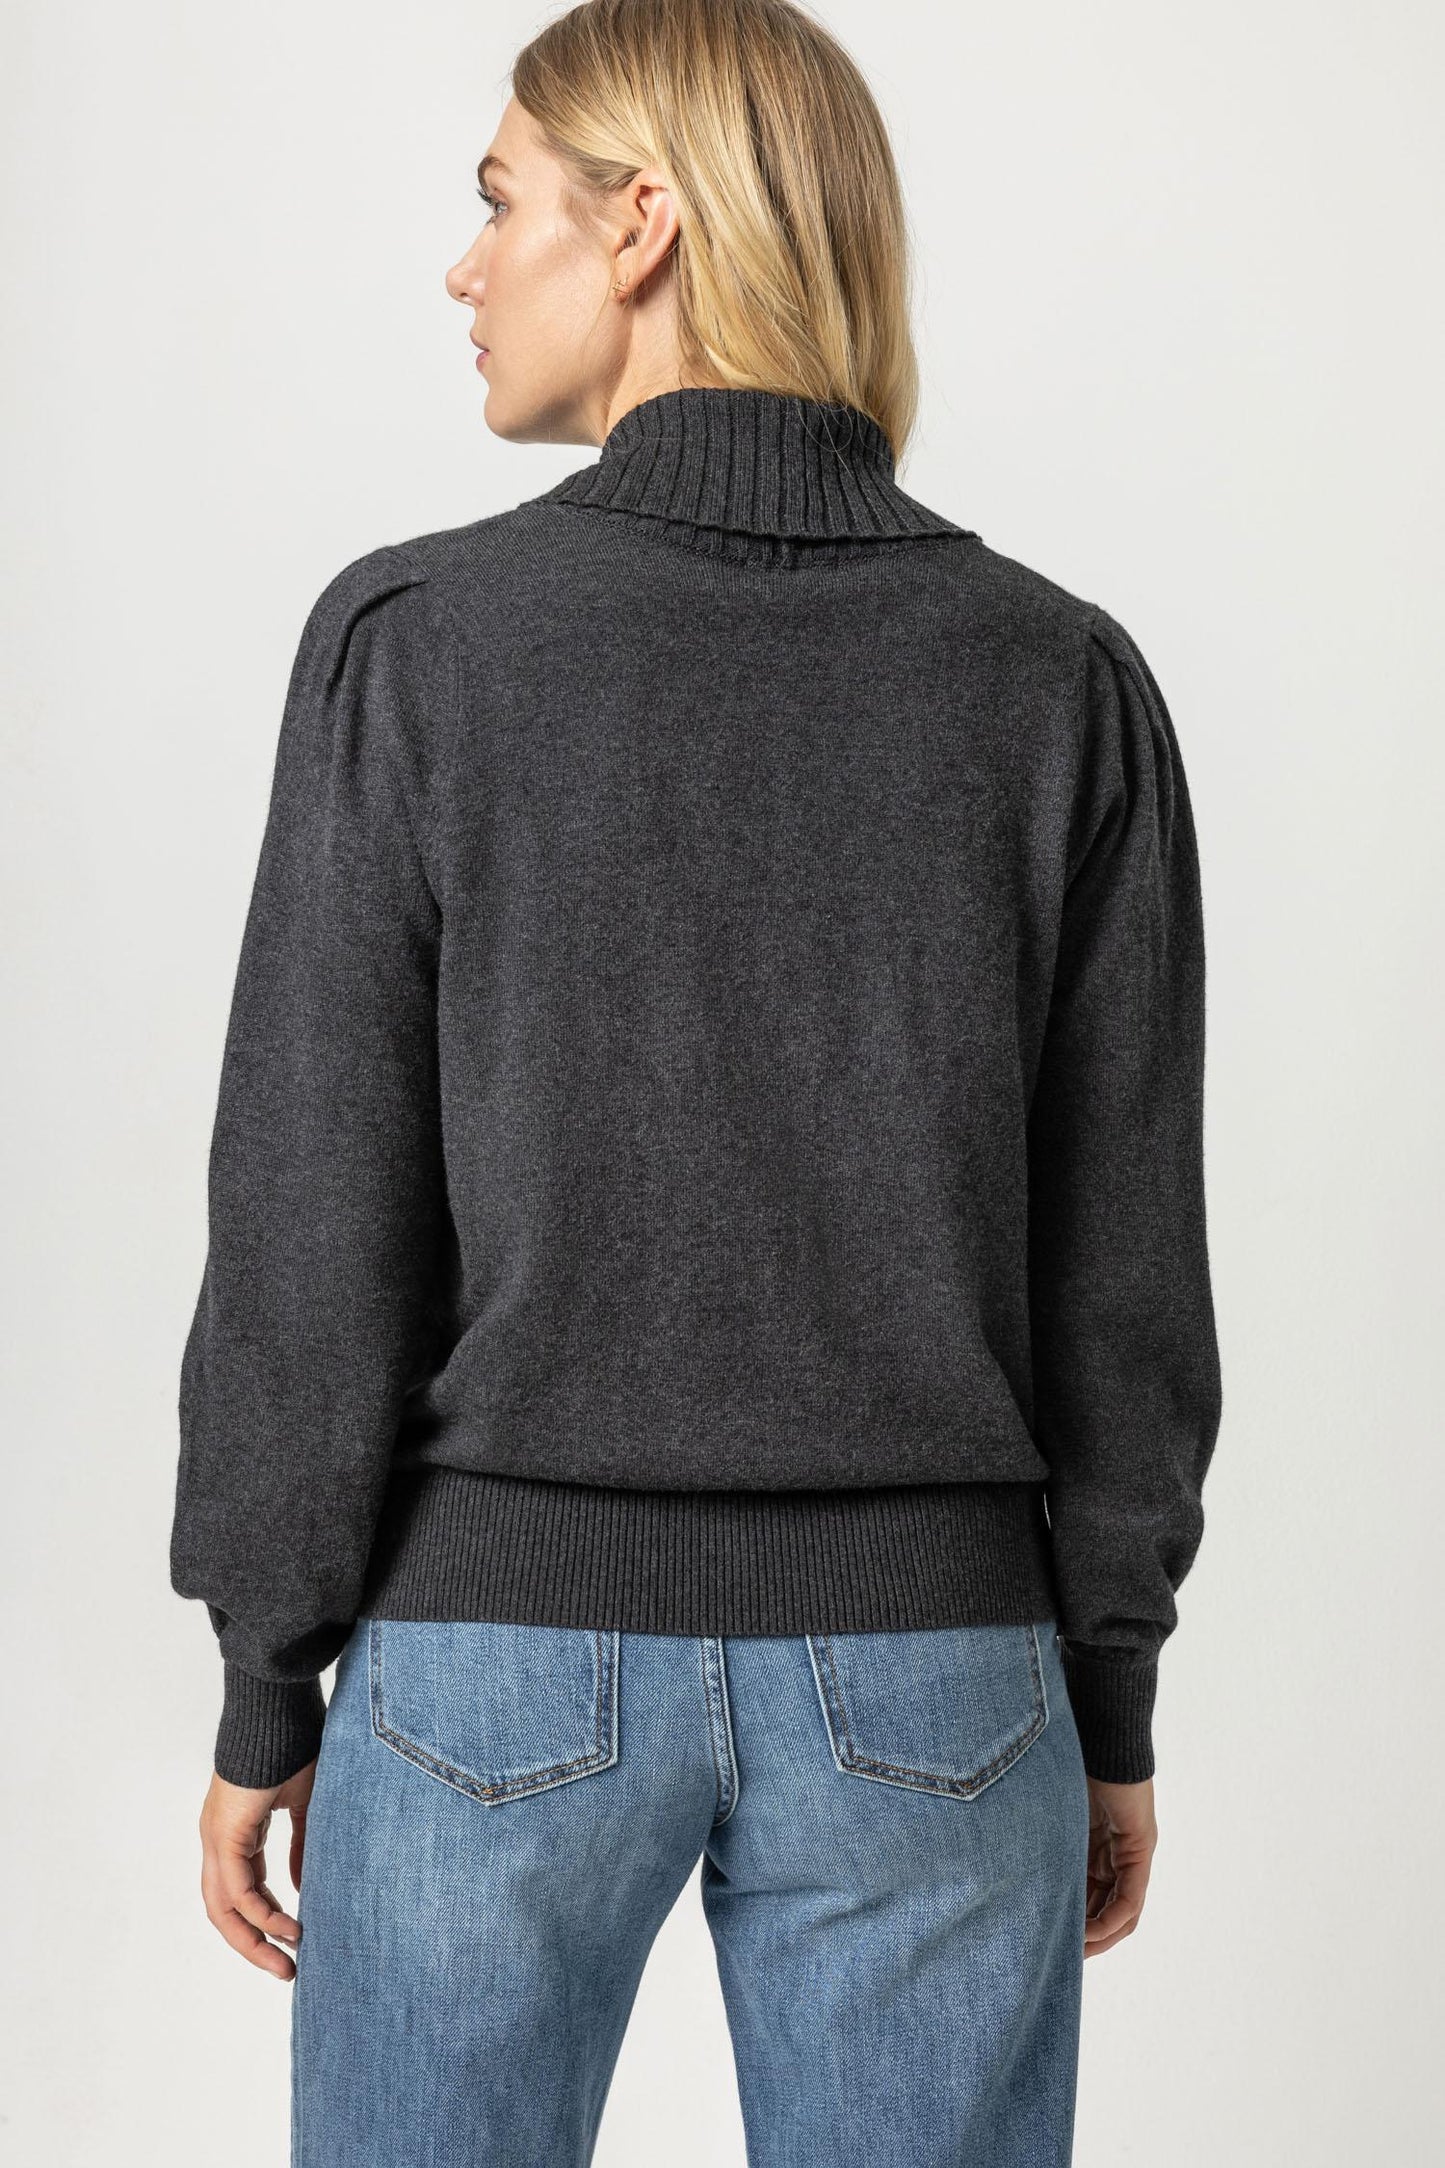 
                  
                    Lilla P | Shawl Collar Pullover Sweater
                  
                